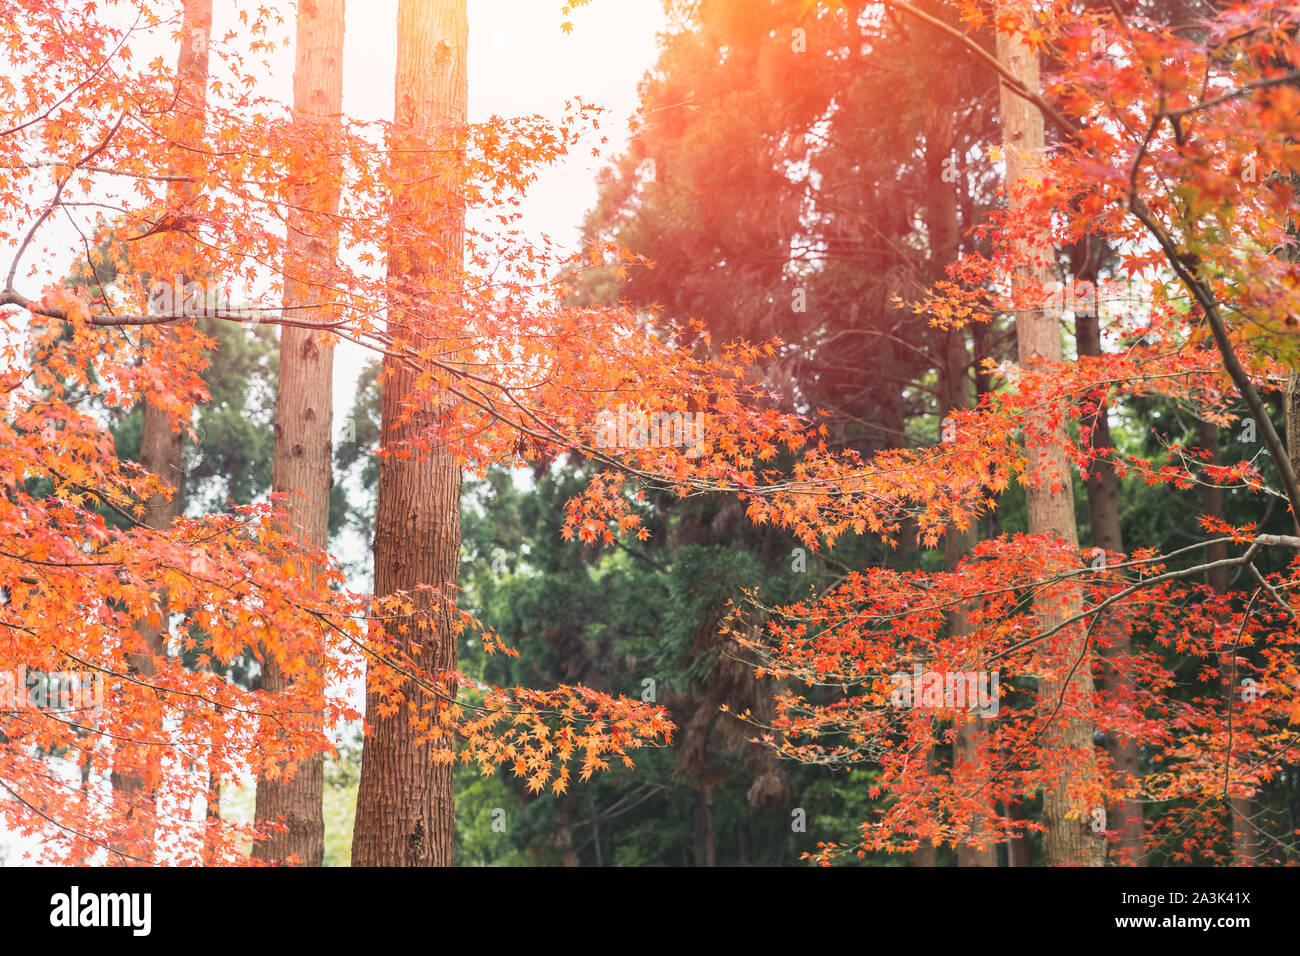 Hãy chiêm ngưỡng những lá phong đỏ đẹp tựa như hoa anh đào đang nở rộ tại Kyoto. Những tia nắng chiếu xuống những lá phong tạo nên một bức tranh thiên nhiên tuyệt đẹp. Màu sắc rực rỡ của lá phong khiến bạn khó lòng không mê mẩn và tình nguyện khám phá thêm nhiều hơn nữa về Kyoto.